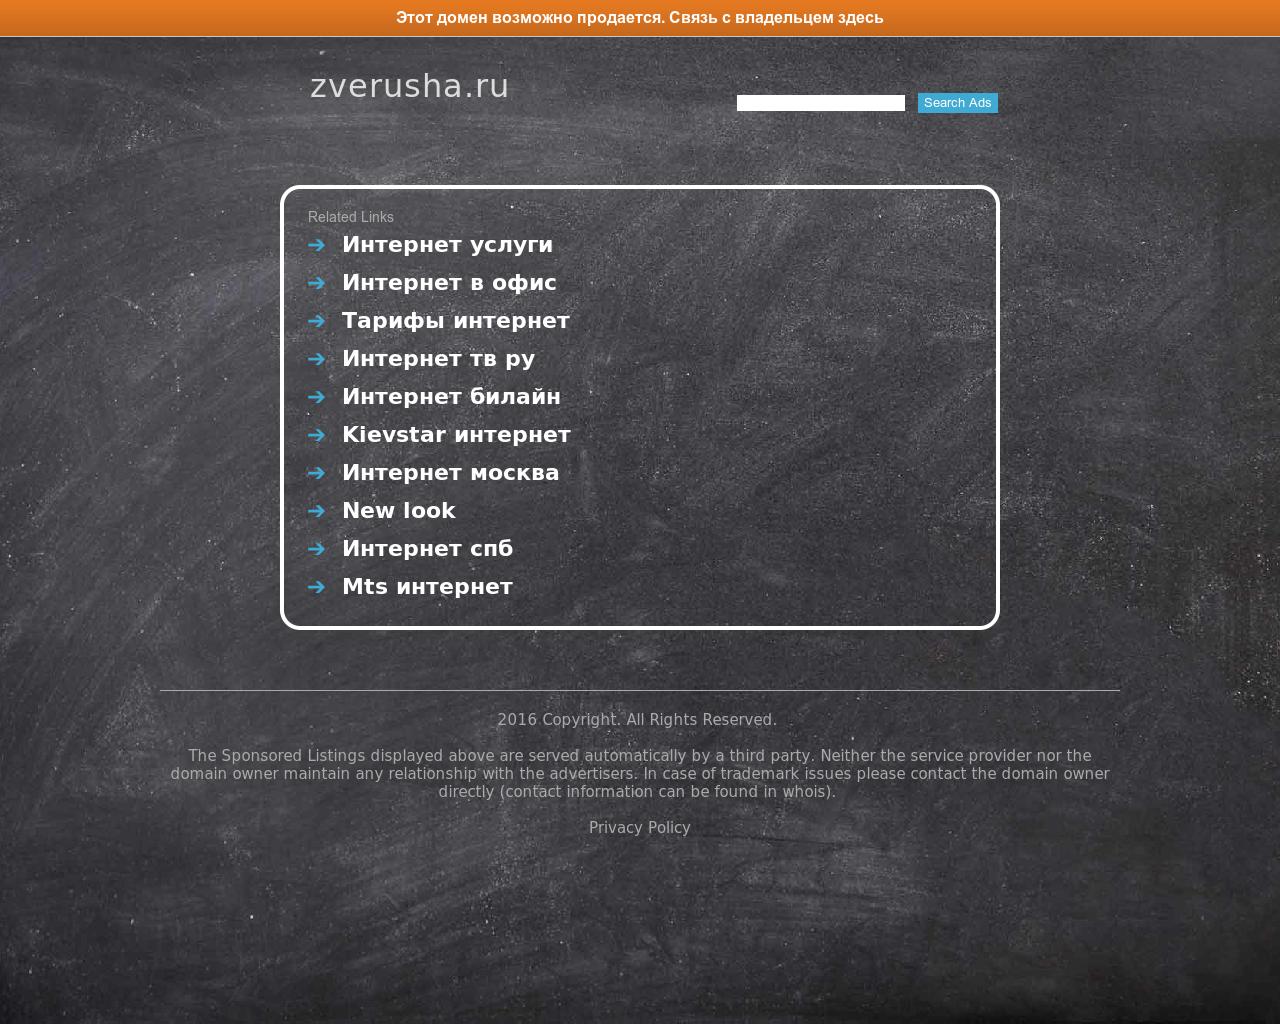 Изображение сайта zverusha.ru в разрешении 1280x1024